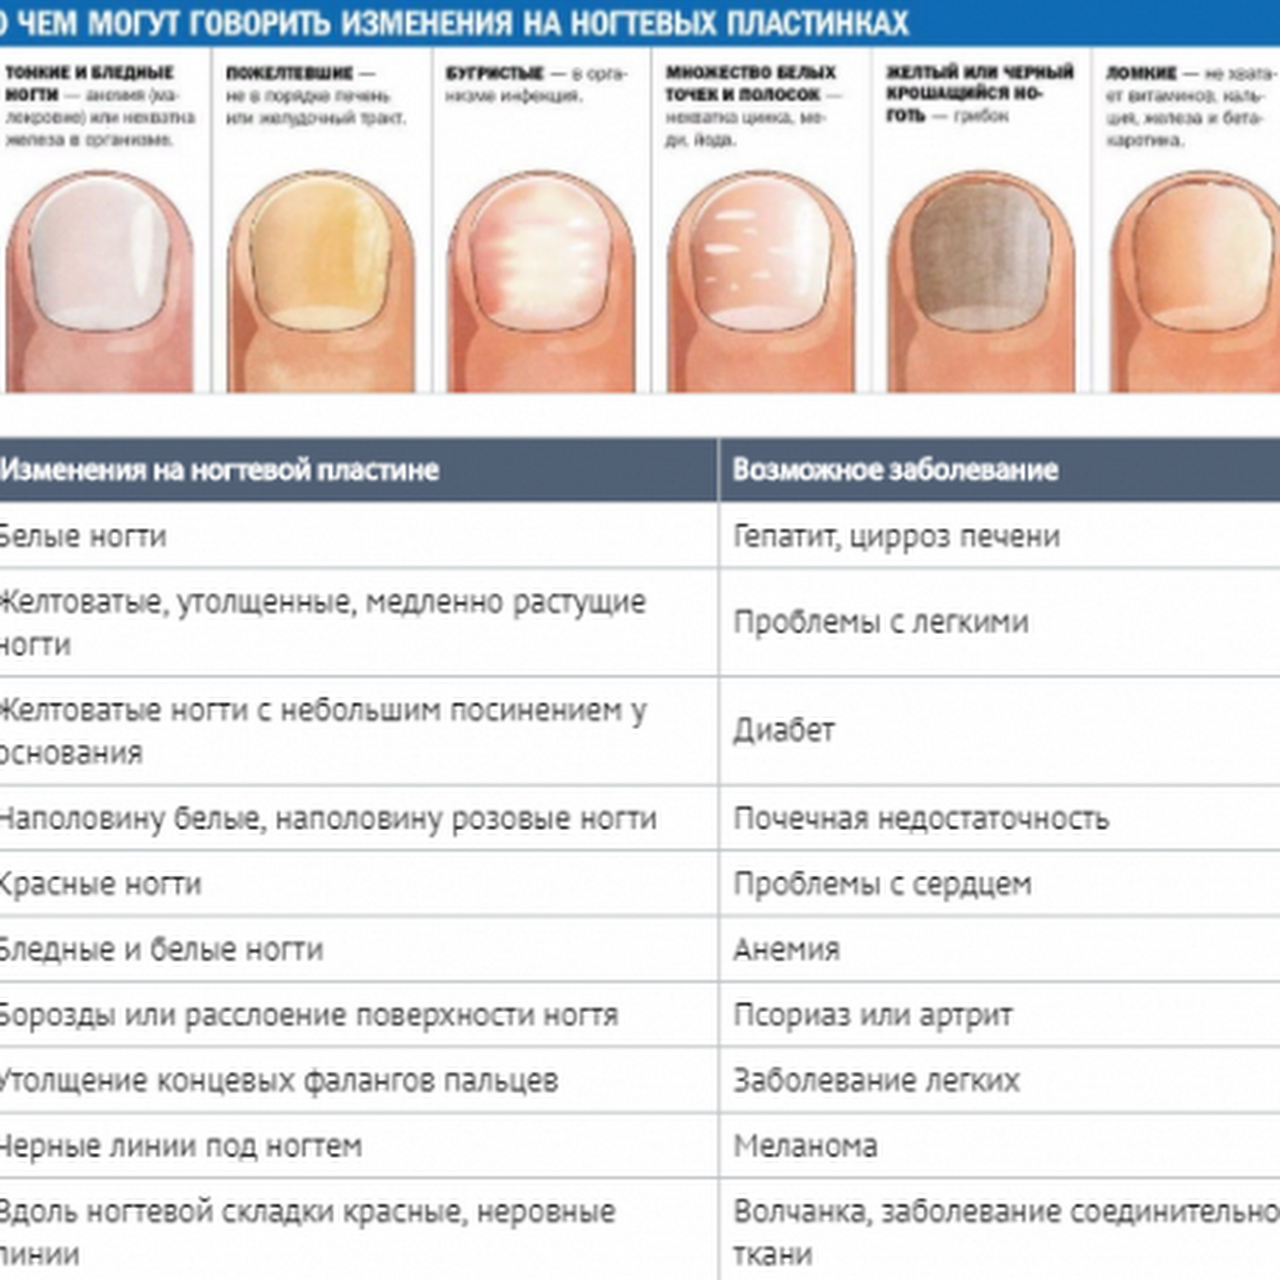 По ногтям определить человеком. Определение болезни по состоянию ногтей. Заболевания ногтей на руках таблица описание. Как определить по цвету ногтей заболевание. Выявление болезни по ногтям.